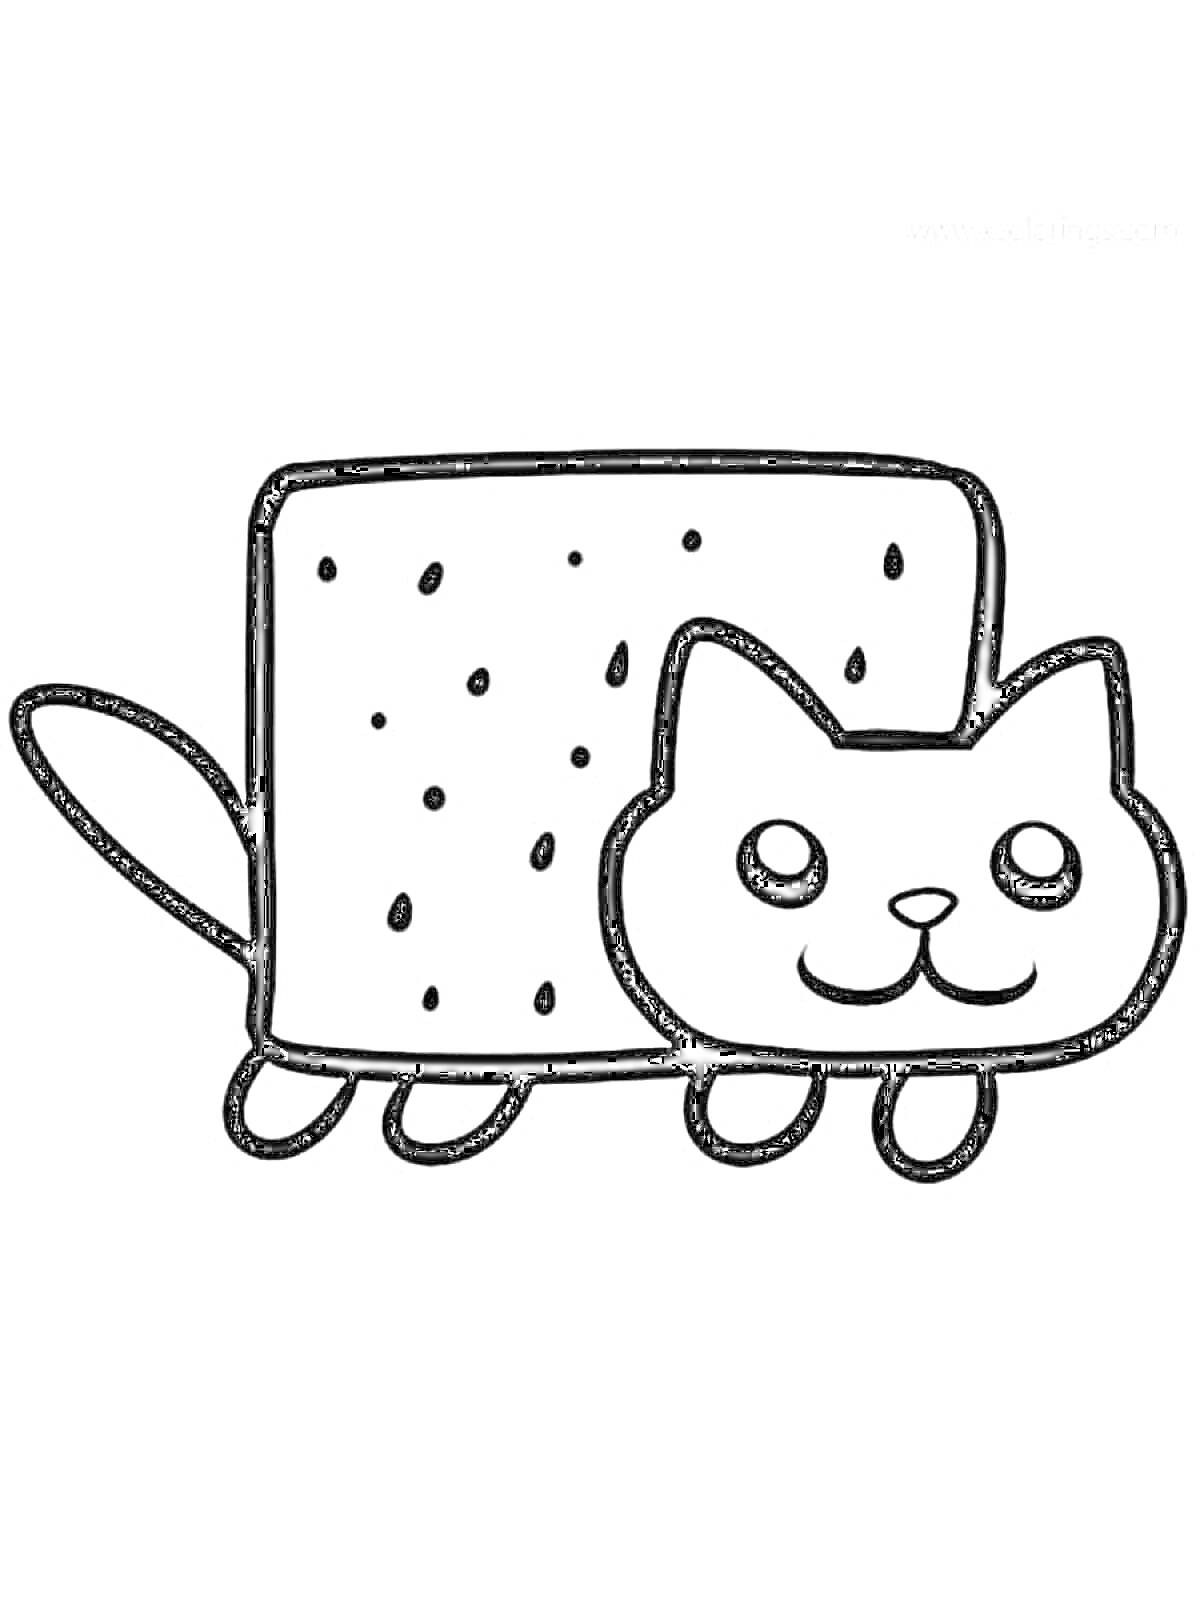 Раскраска Кот с телом в форме хлеба, хвостик торчит слева, четыре лапки и улыбающаяся мордочка